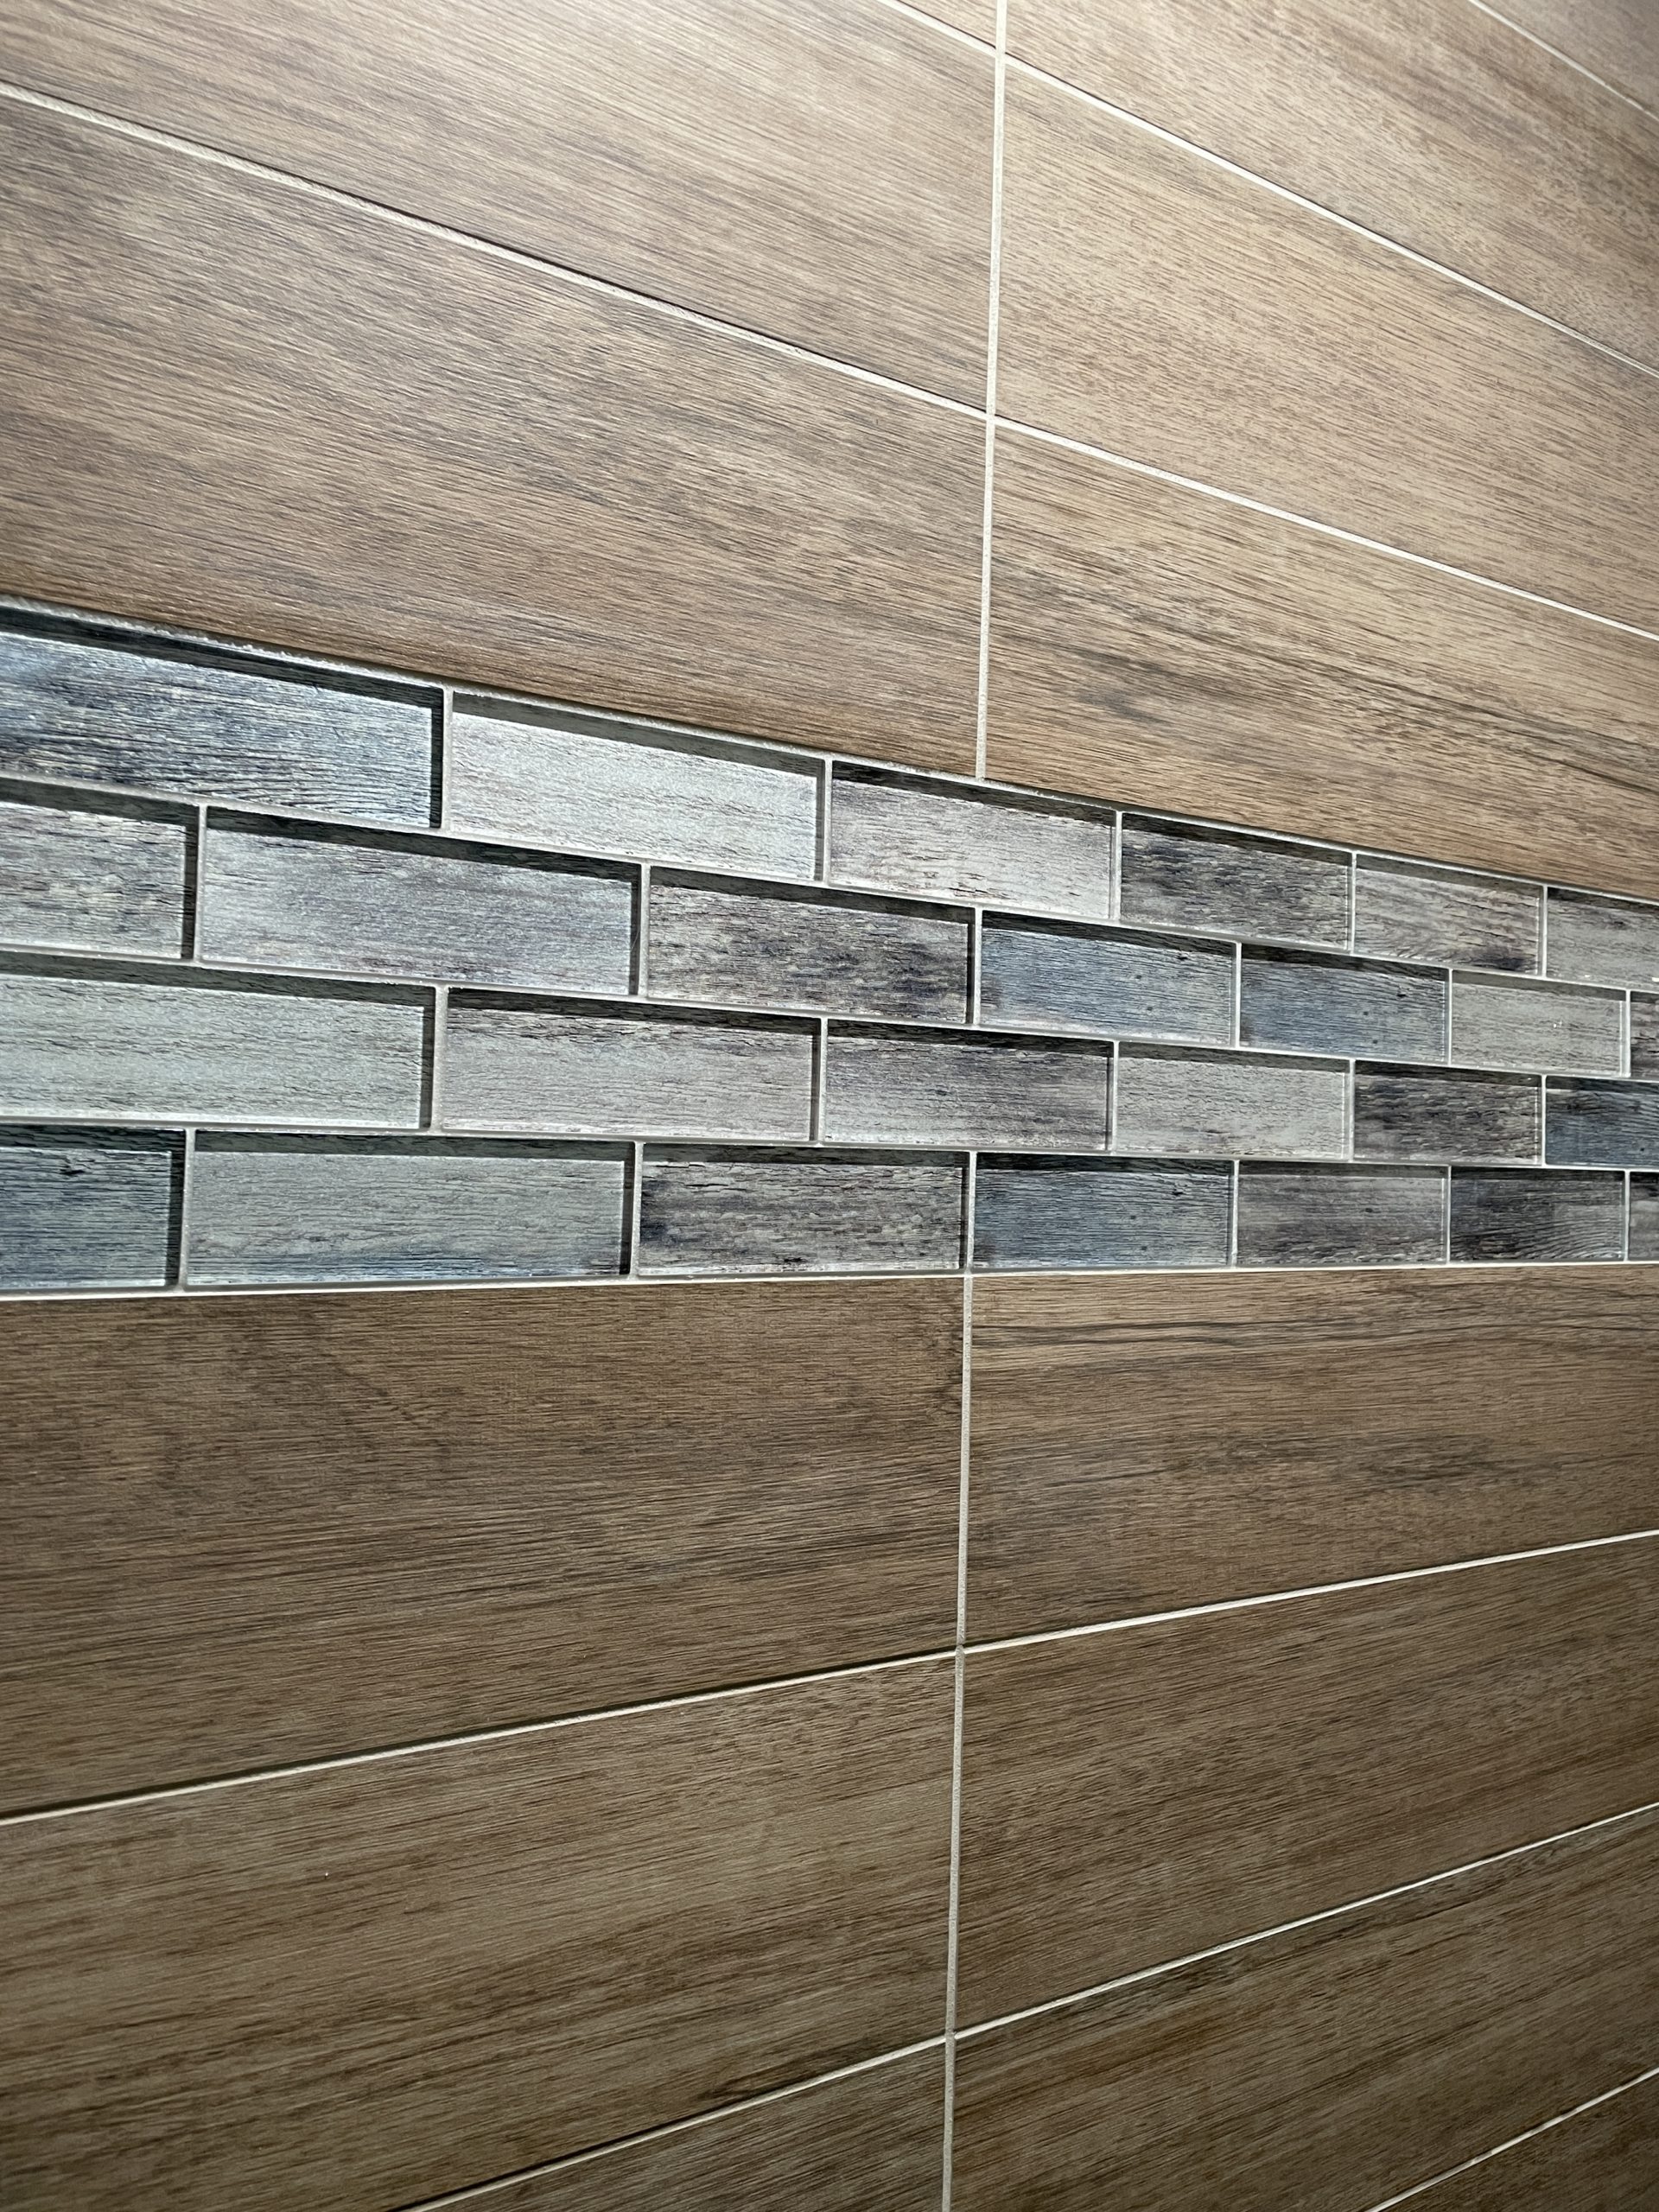  |  Wood Tile Bathroom Tile